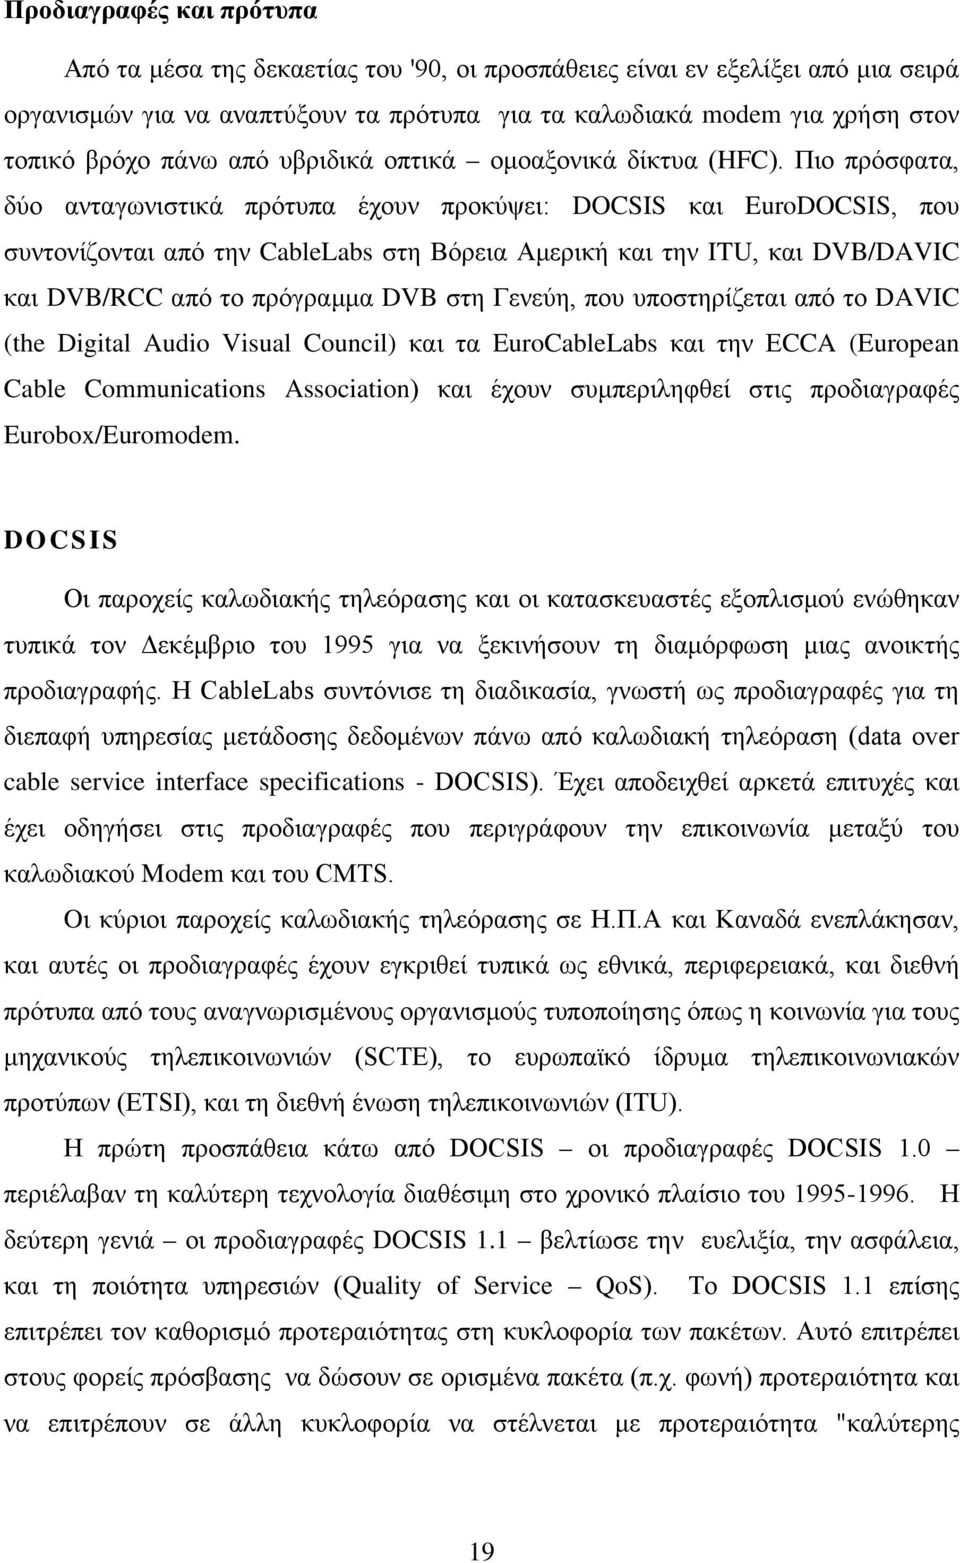 Πιο πρόσφατα, δύο ανταγωνιστικά πρότυπα έχουν προκύψει: DOCSIS και EuroDOCSIS, που συντονίζονται από την CableLabs στη Βόρεια Αμερική και την ITU, και DVB/DAVIC και DVB/RCC από το πρόγραμμα DVB στη